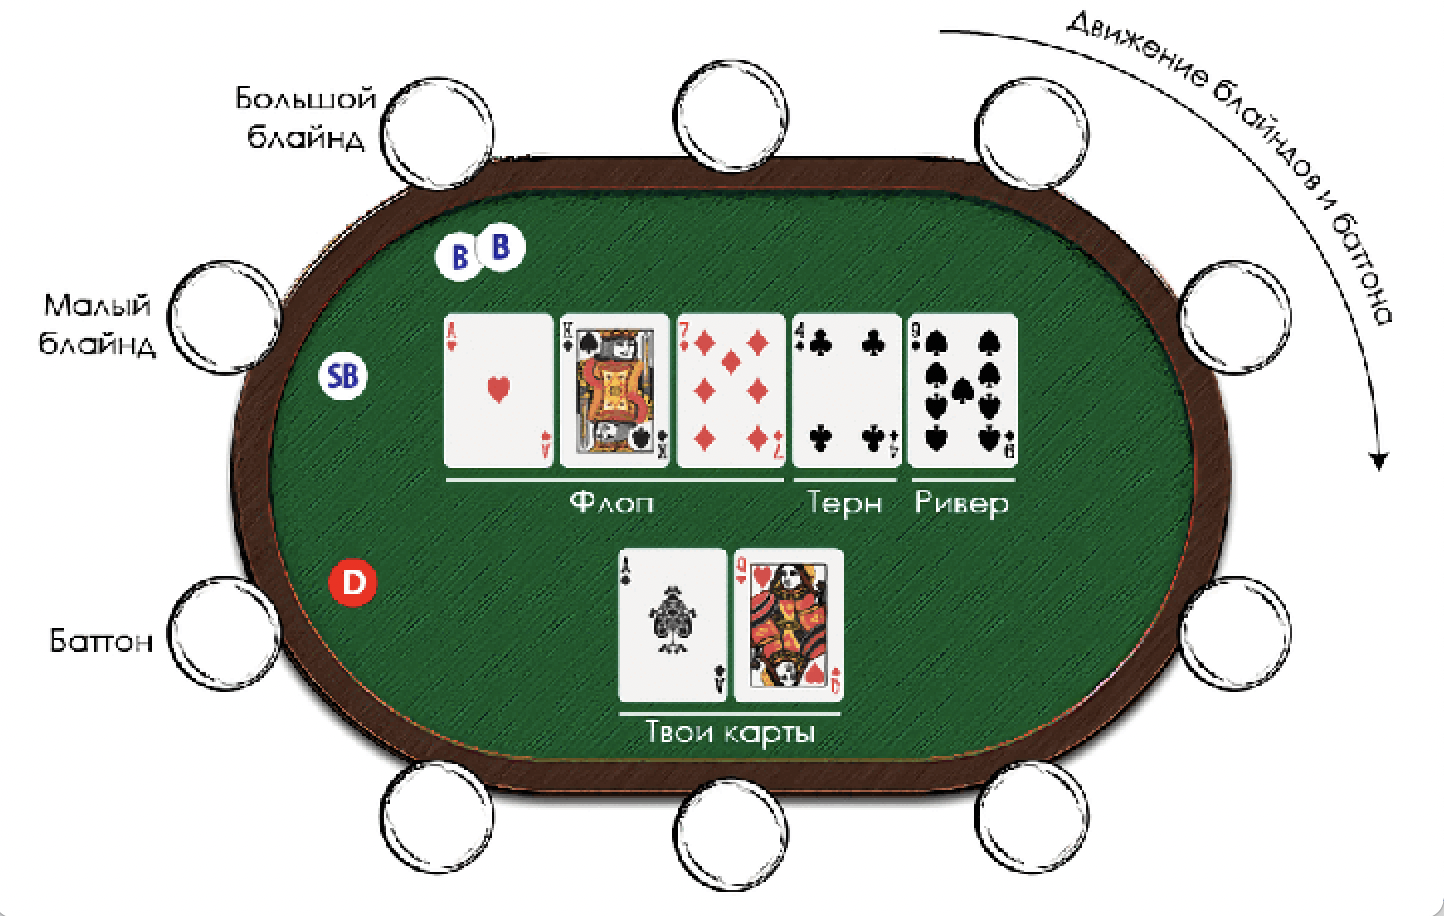 Pokerdom сайт зеркало pokeronlinerus biz. Техасский холдем малый и большой блайнд. Уровни блайндов в покере холдем. Малый блайнд и большой блайнд в покере что это. Позиции игроков в холдеме.